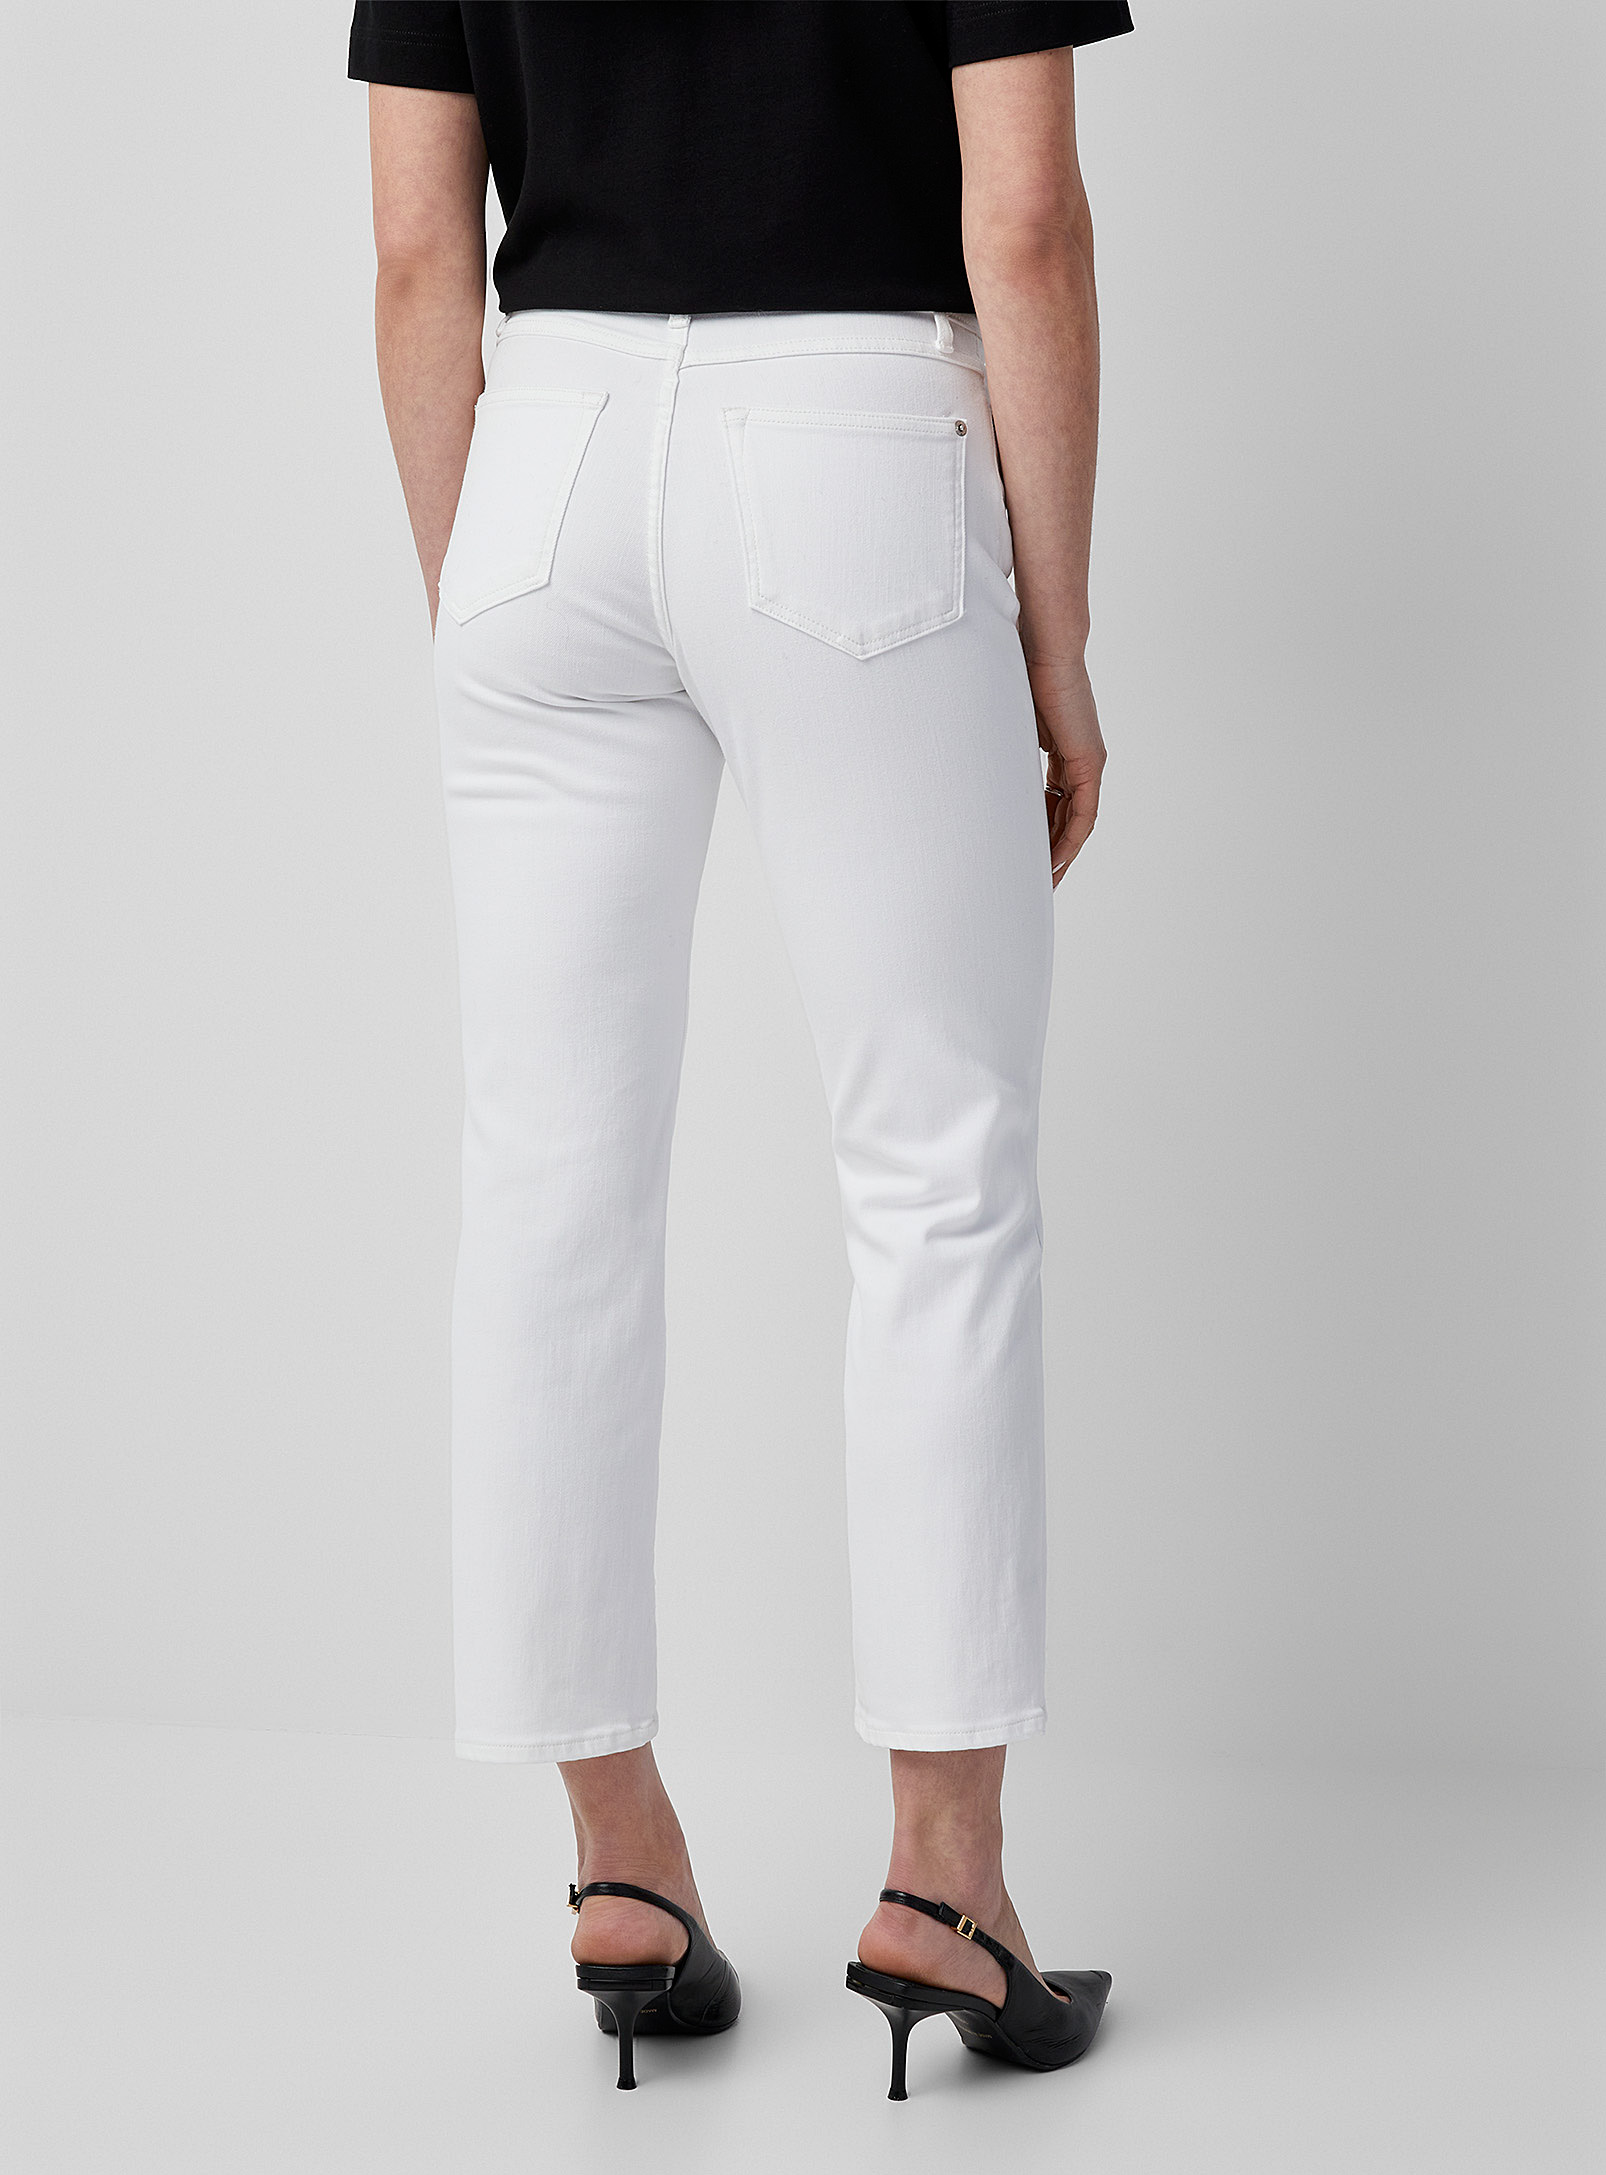 Yoga Jeans - Le jean droit court Chloe blanc